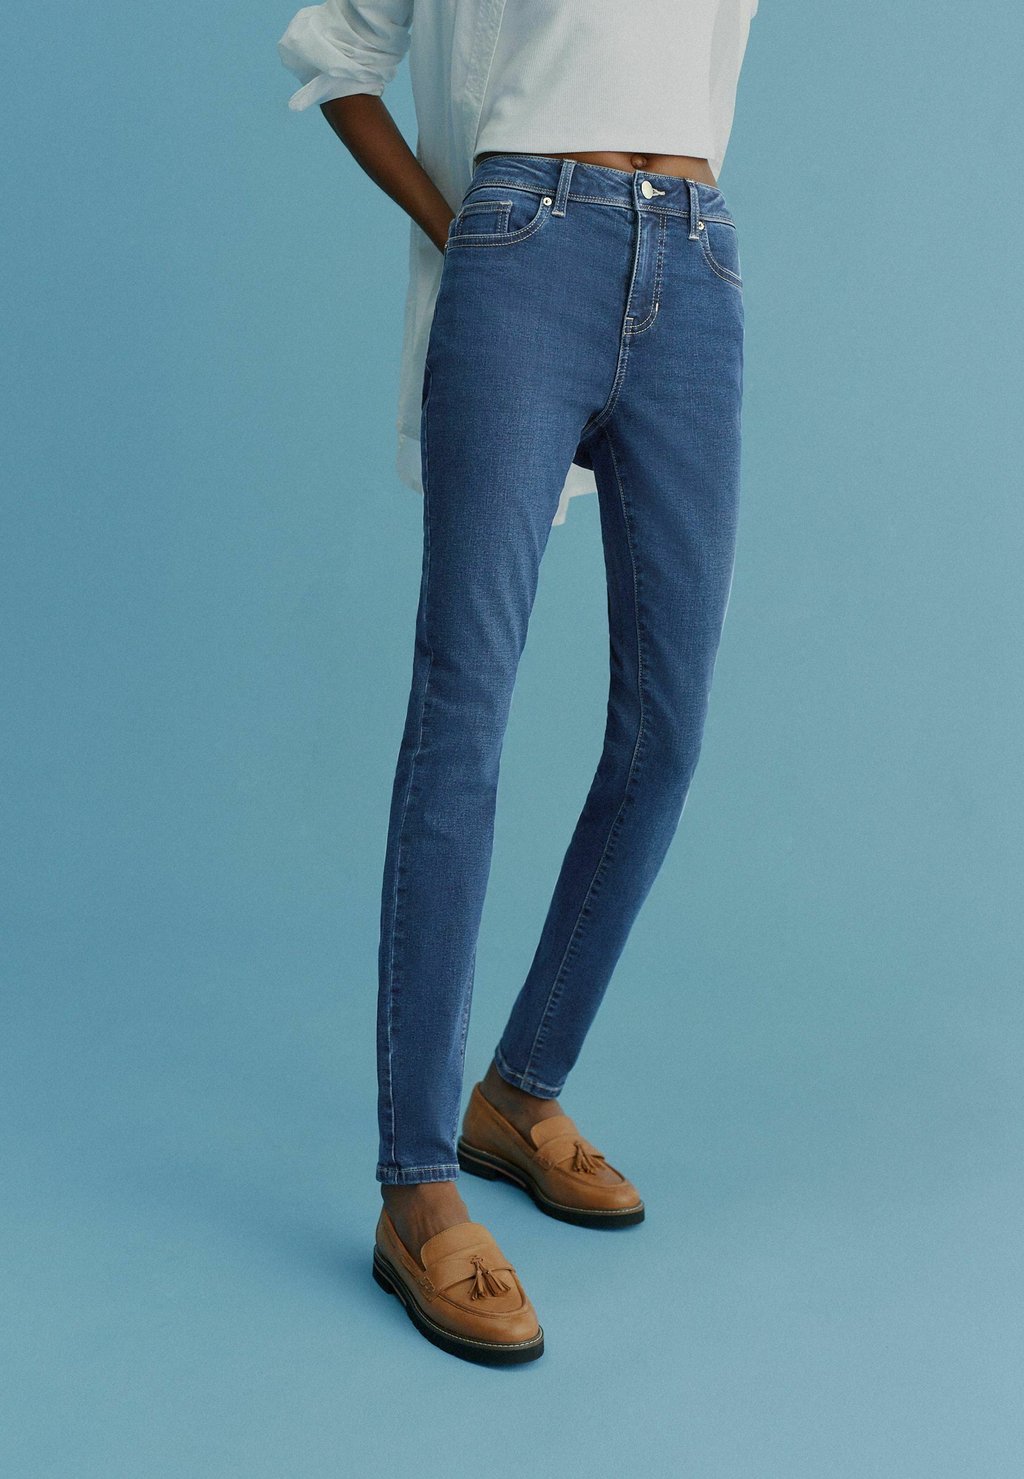 цена Узкие джинсы темно-синего цвета Next, темно-синий